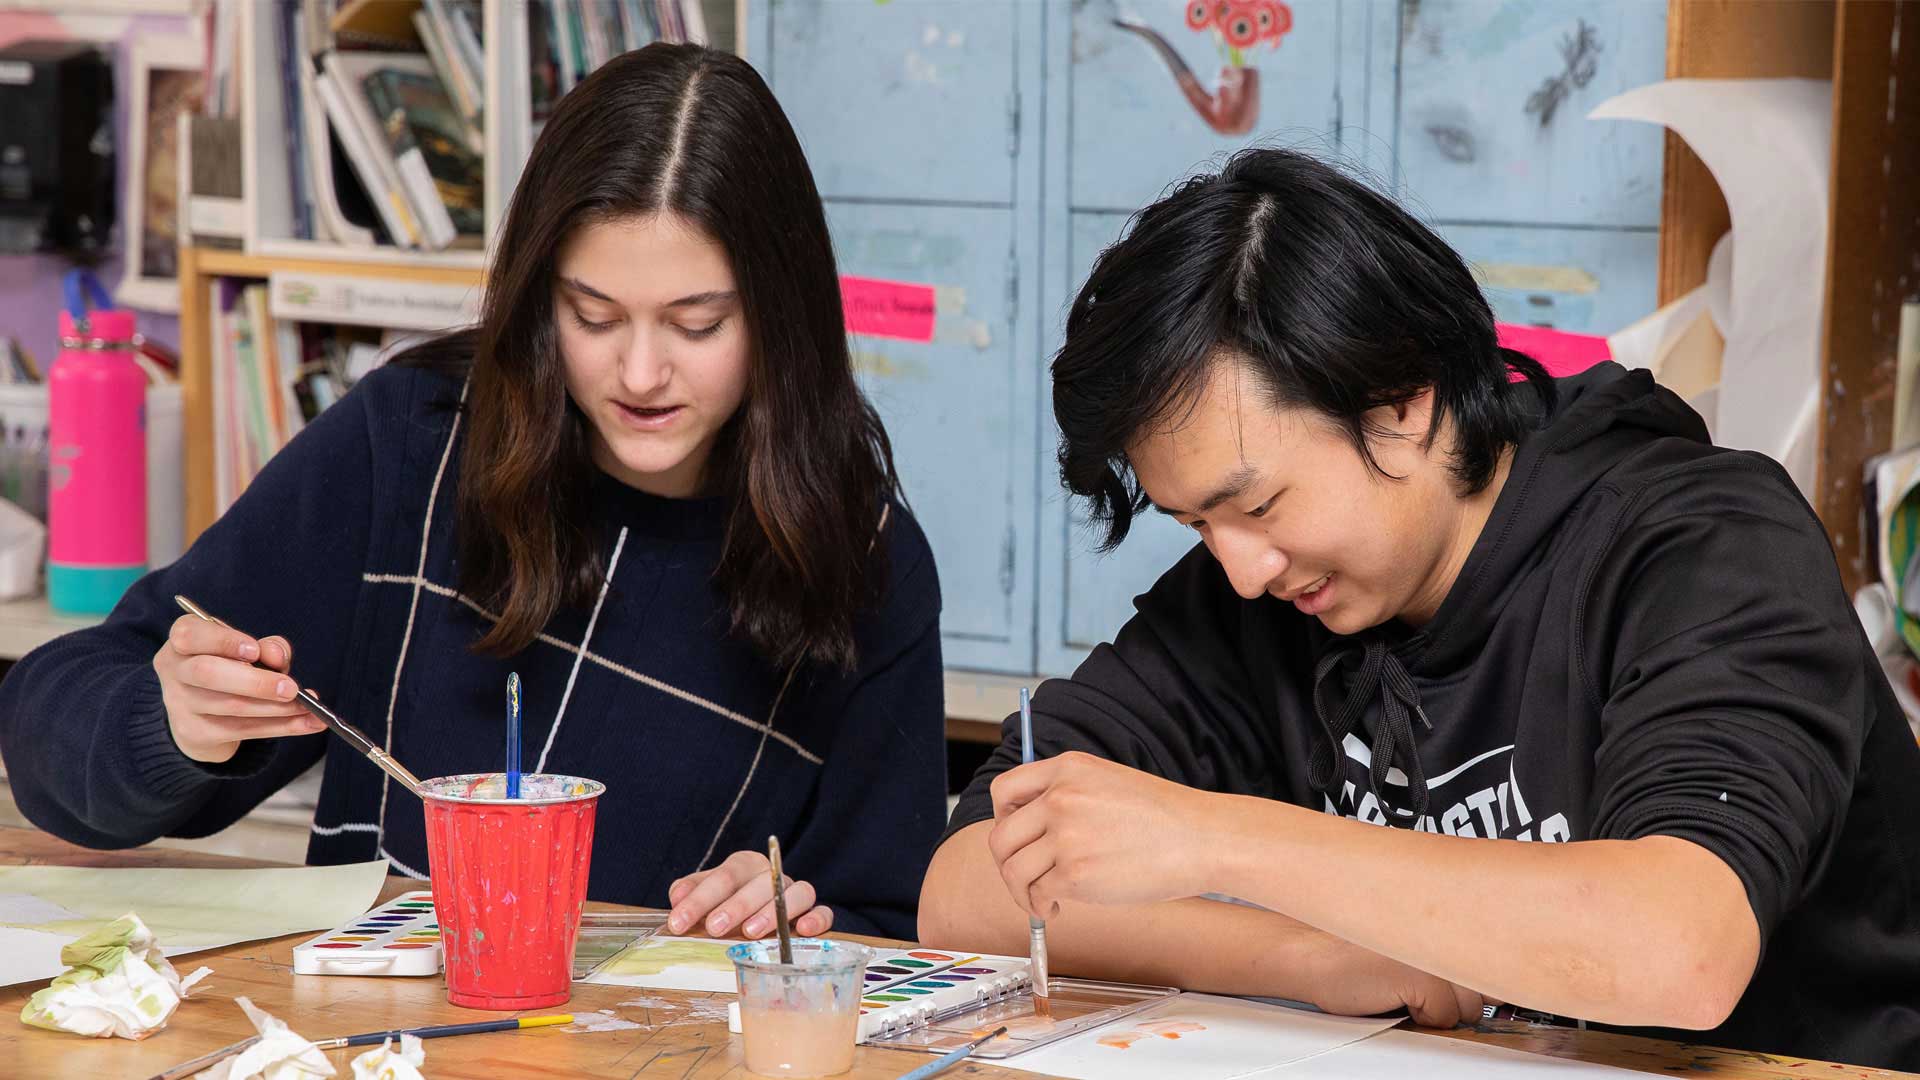 Dva studenti střední školy ve Farmingtonu předvádějí svou kreativitu v hodinách výtvarné výchovy.